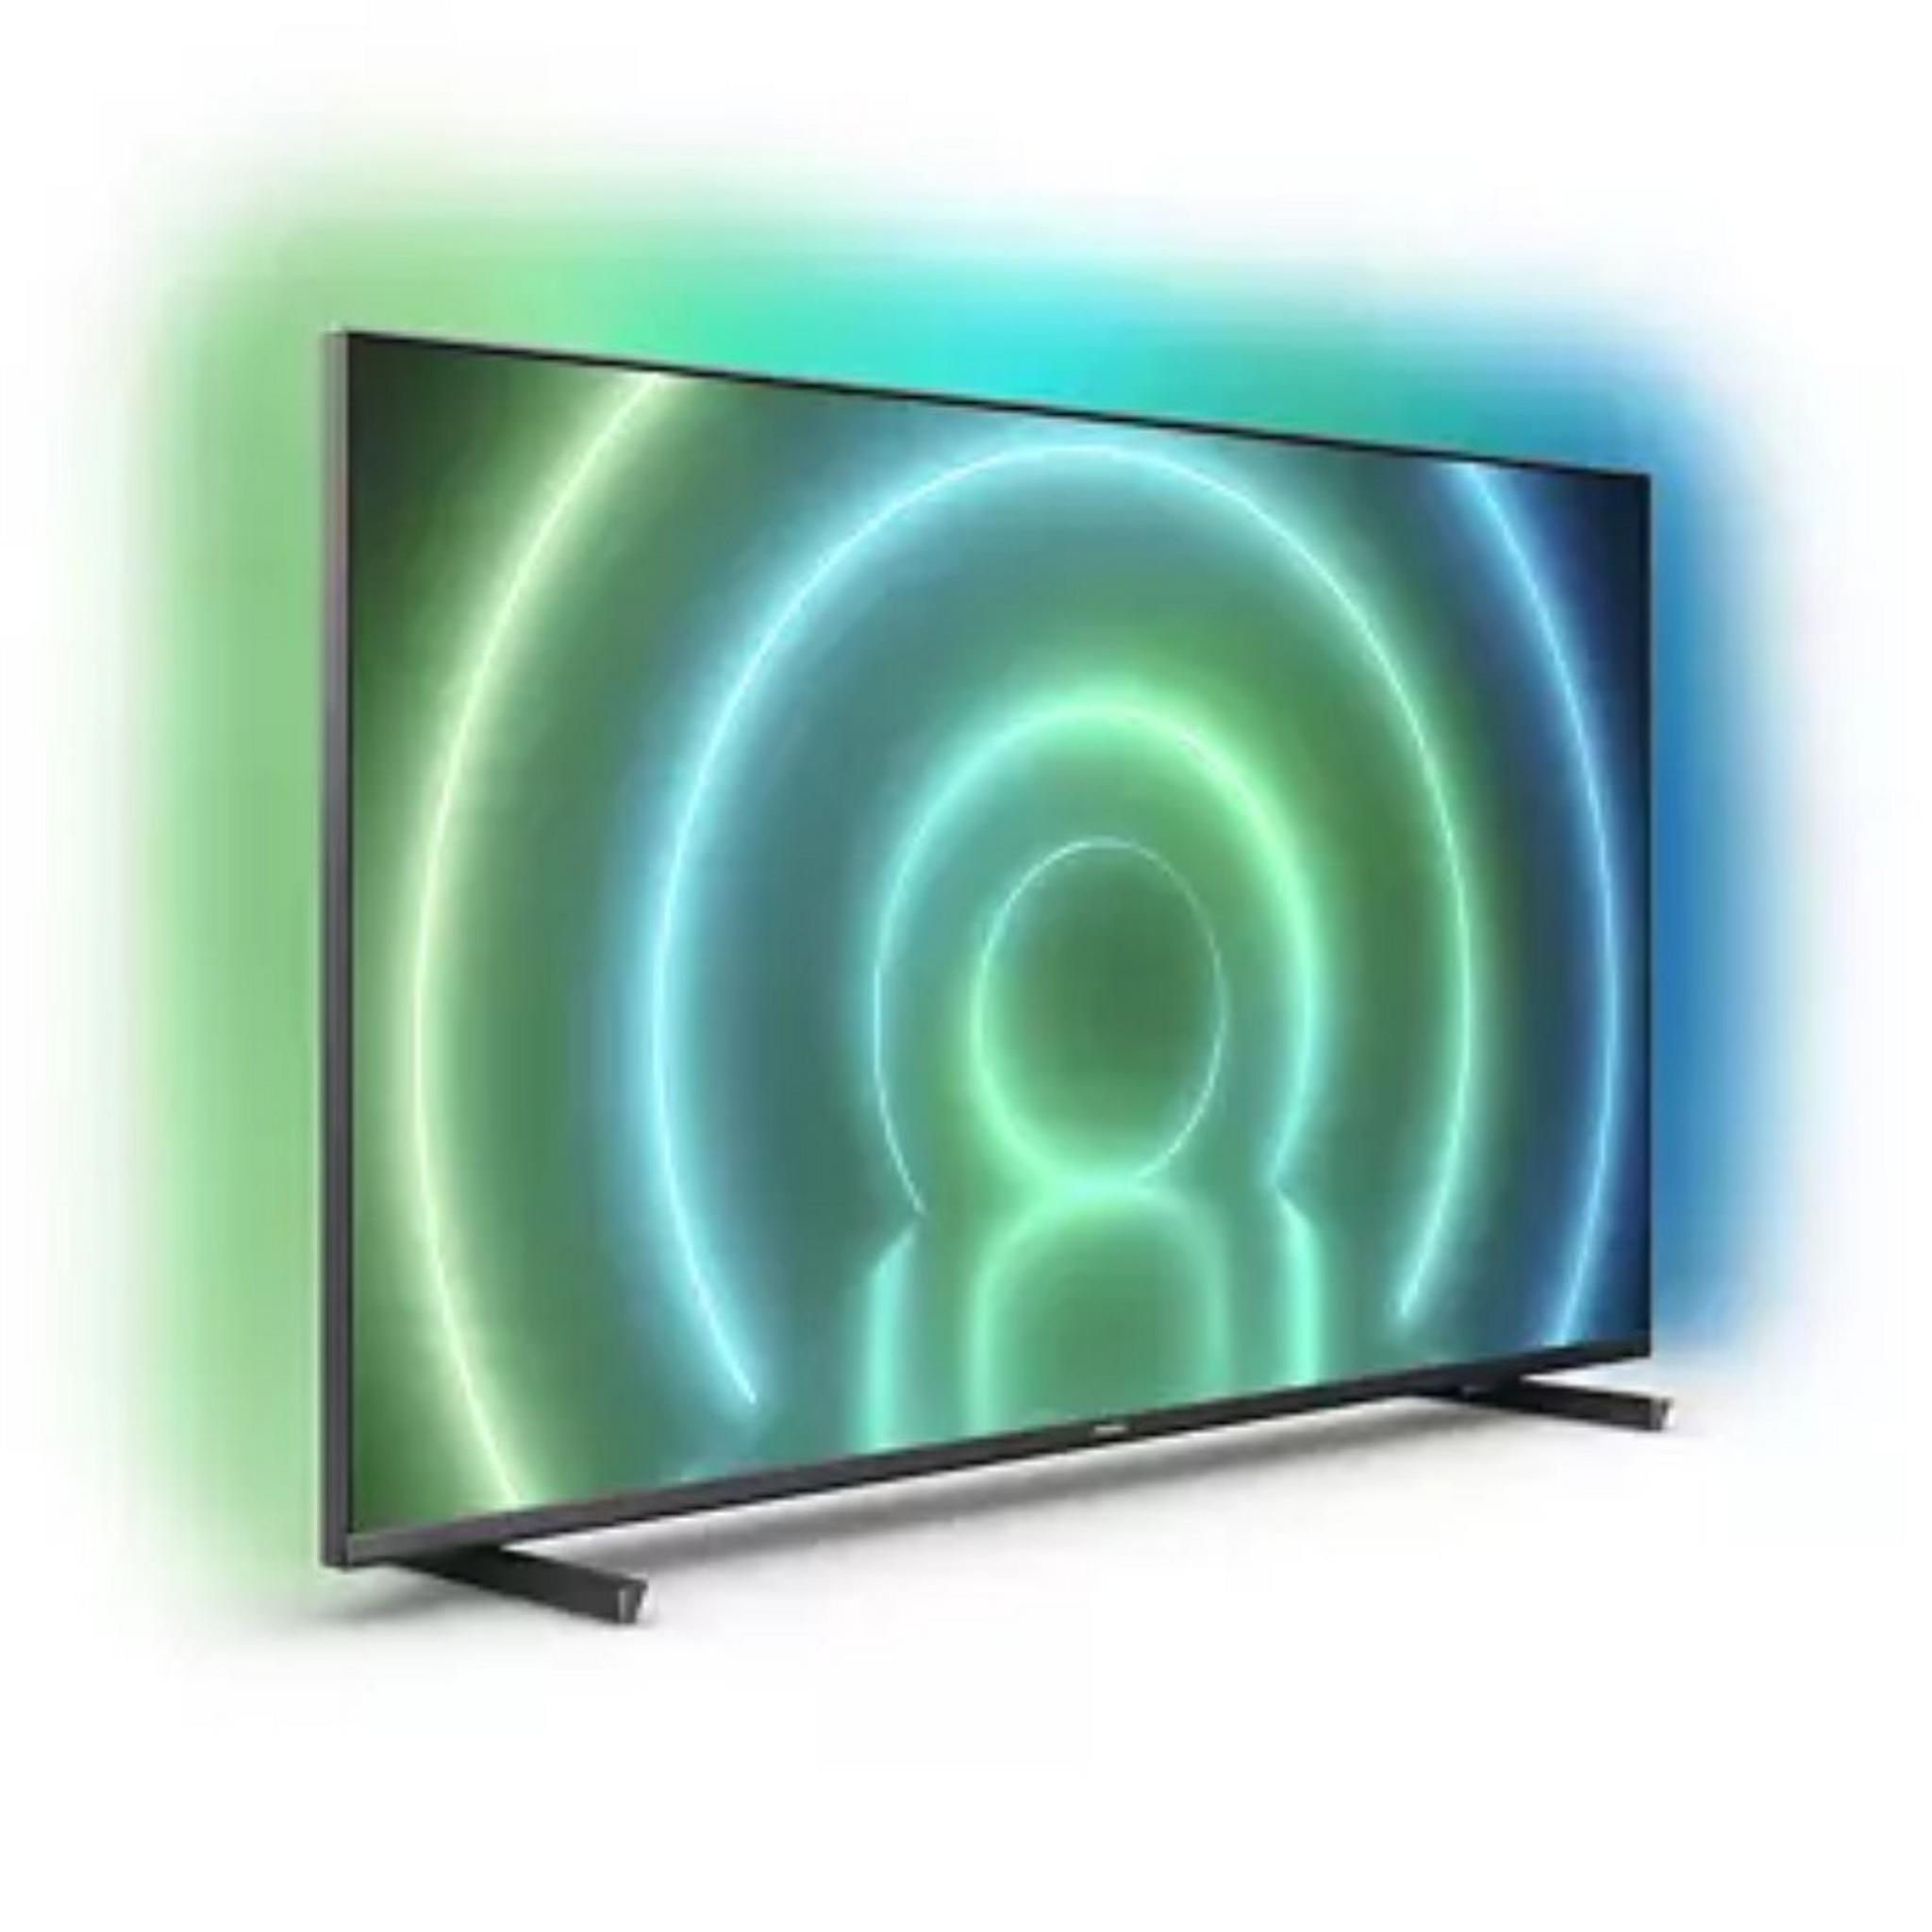 تلفزيون فيلبس أندرويد 4 كي ال اي دي بحجم 50 بوصة (50PUT7906/56)